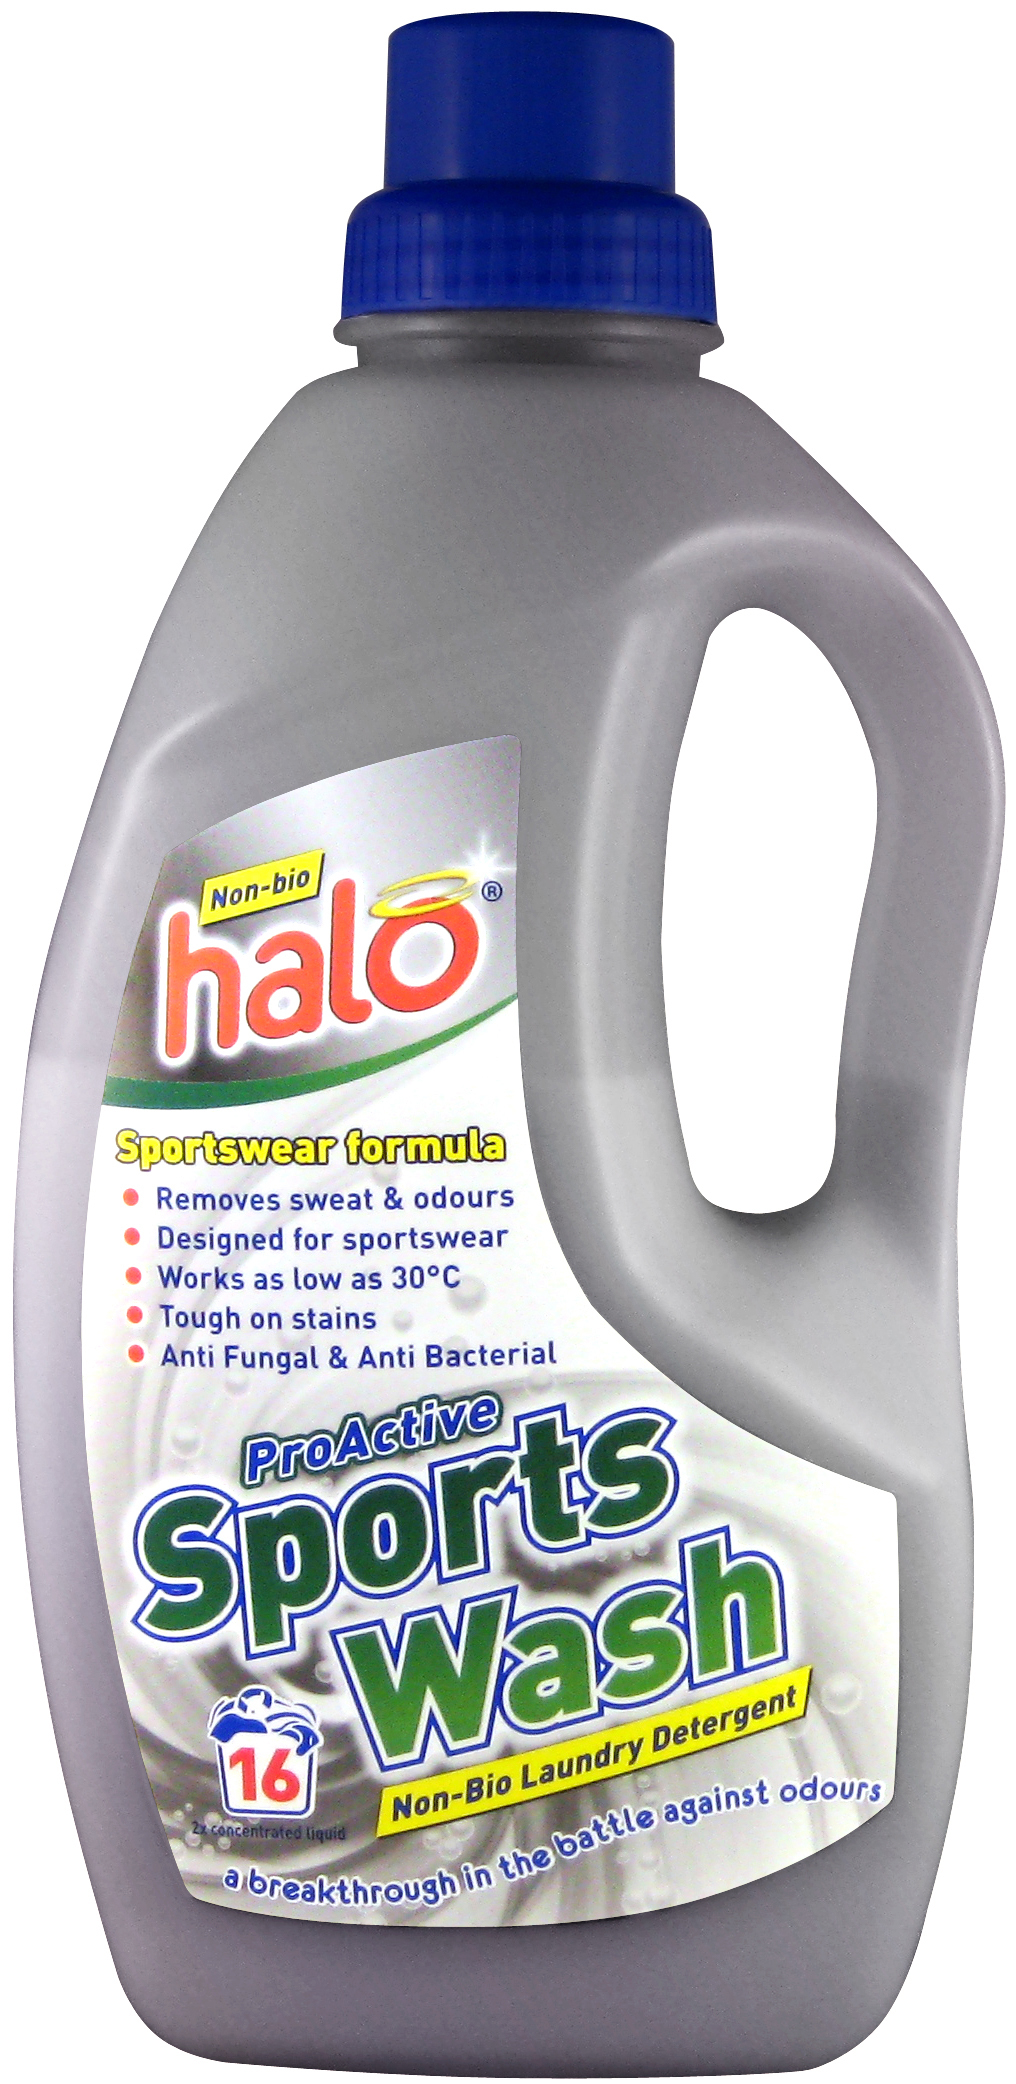 Halo sports wash